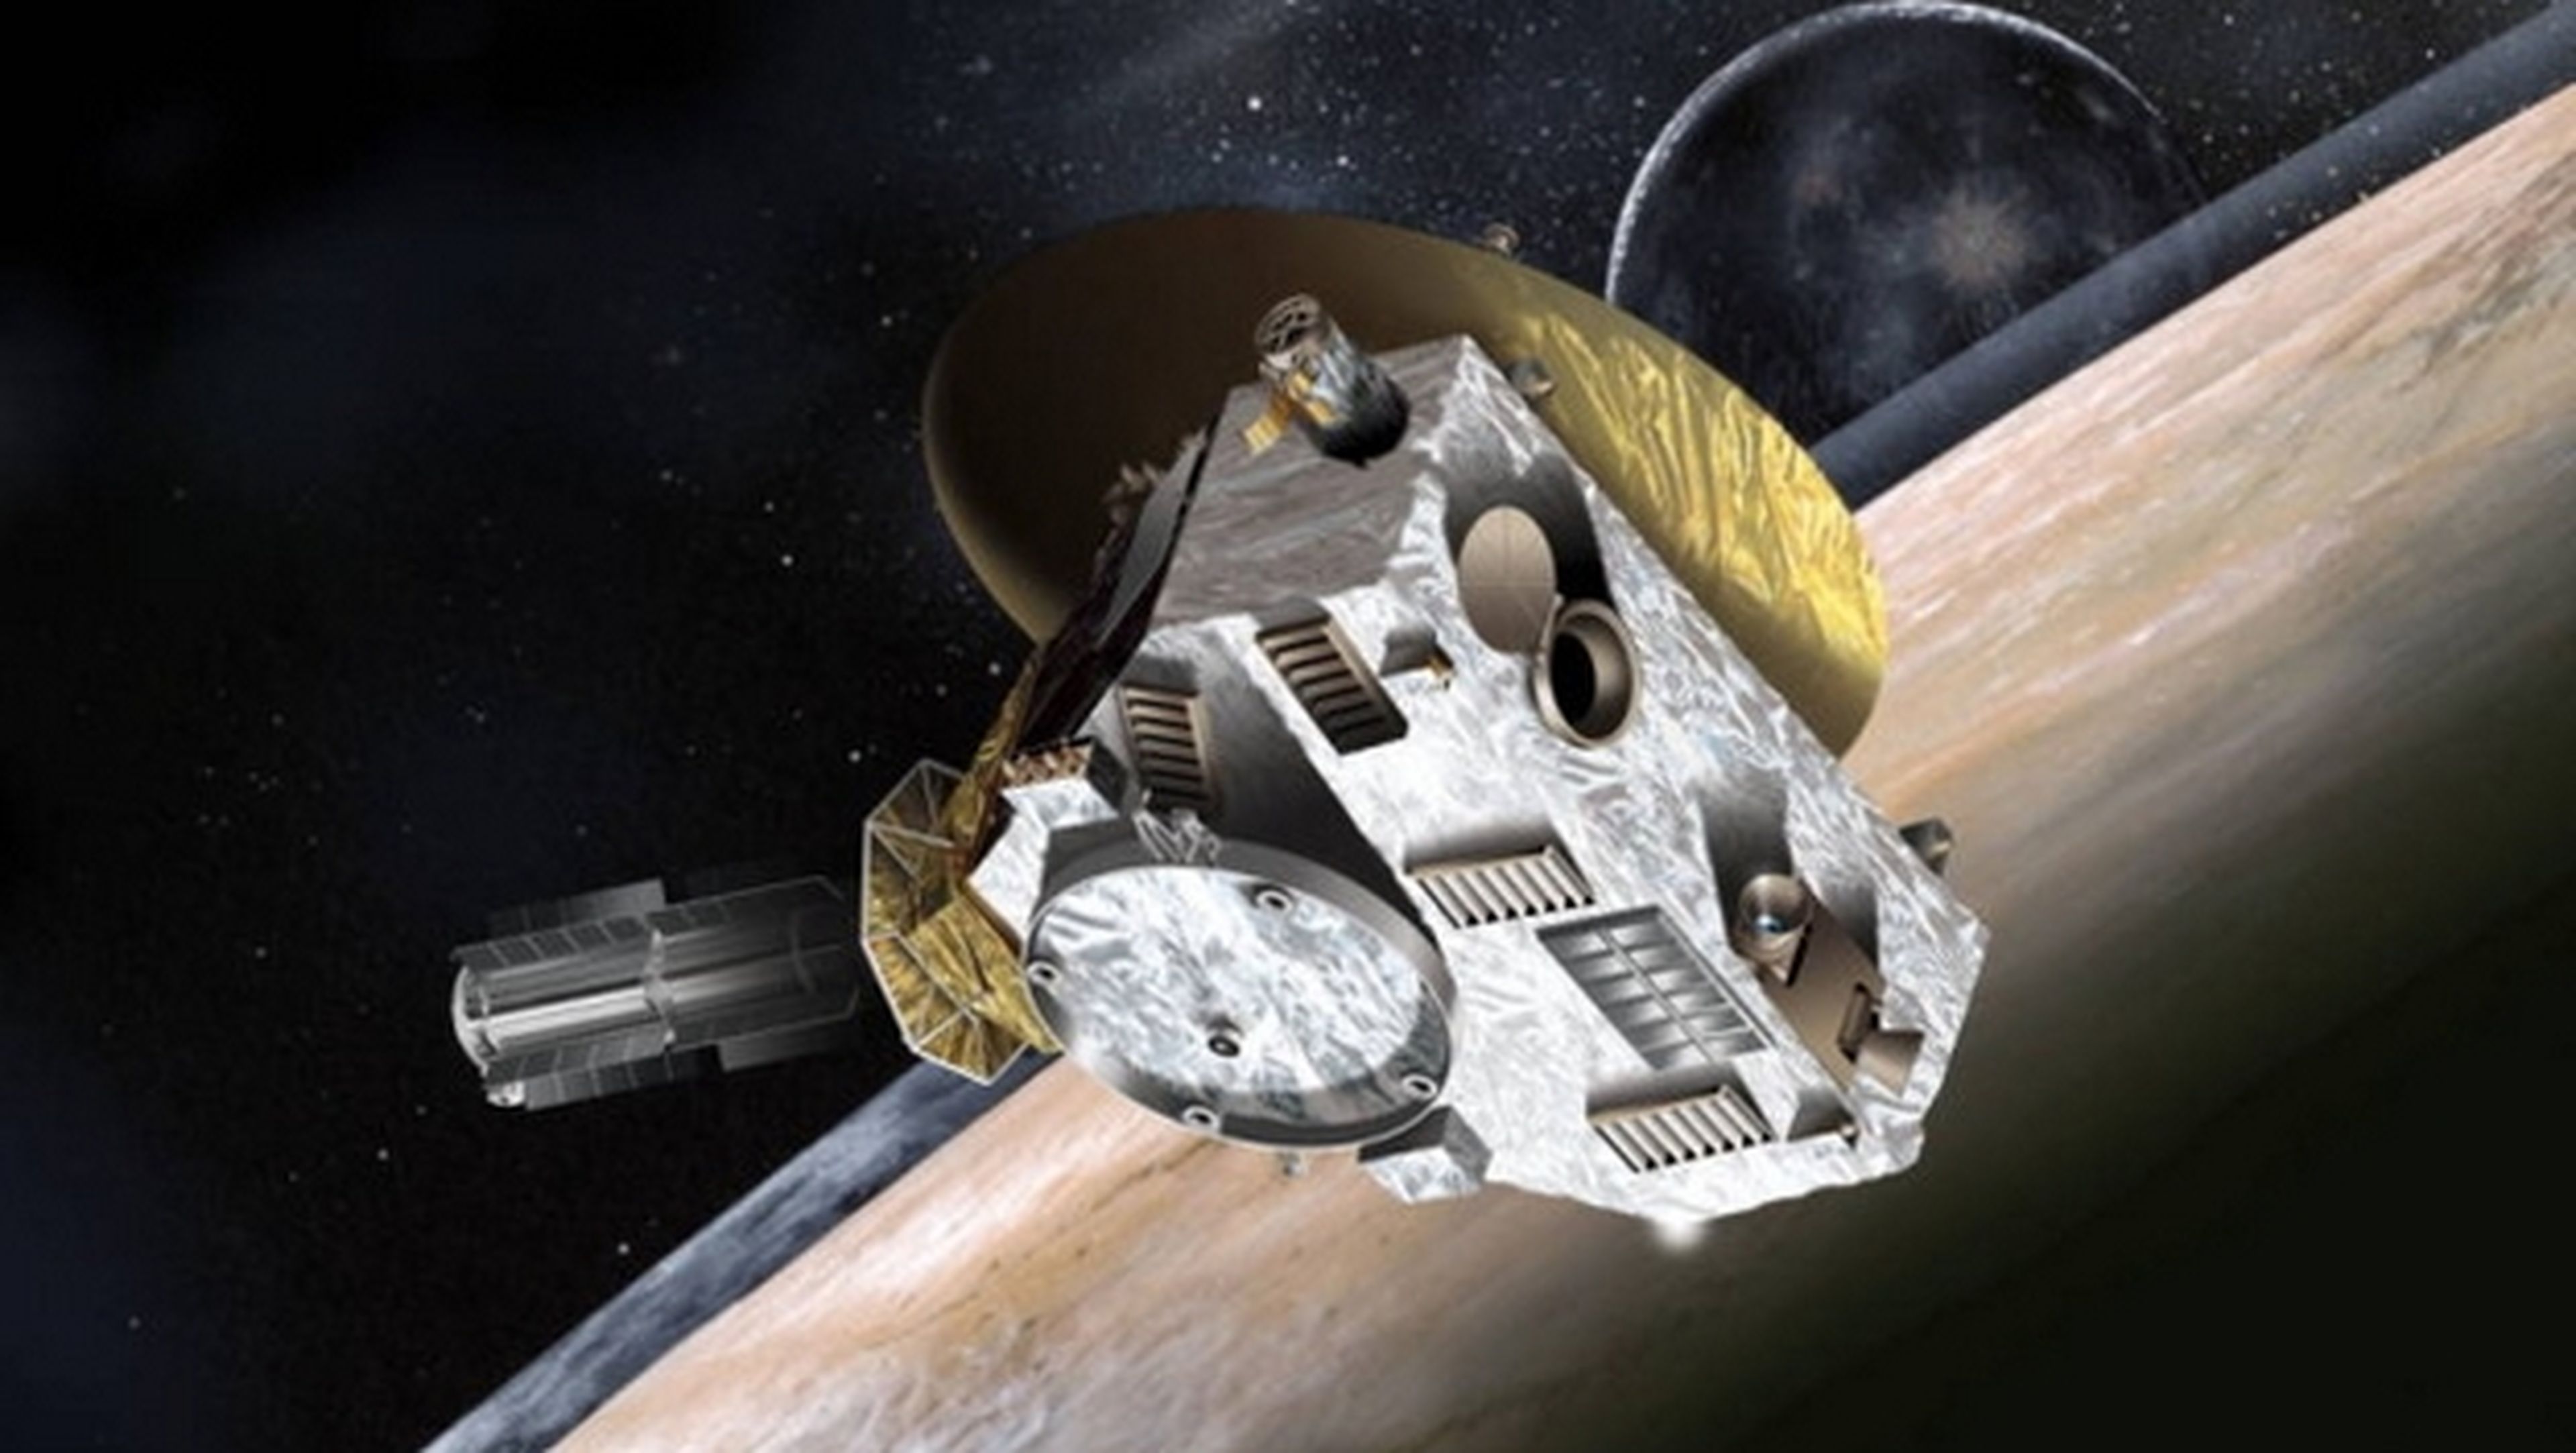 La CPU de la consola PlayStation maneja la sonda New Horizons enviada a Plutón.